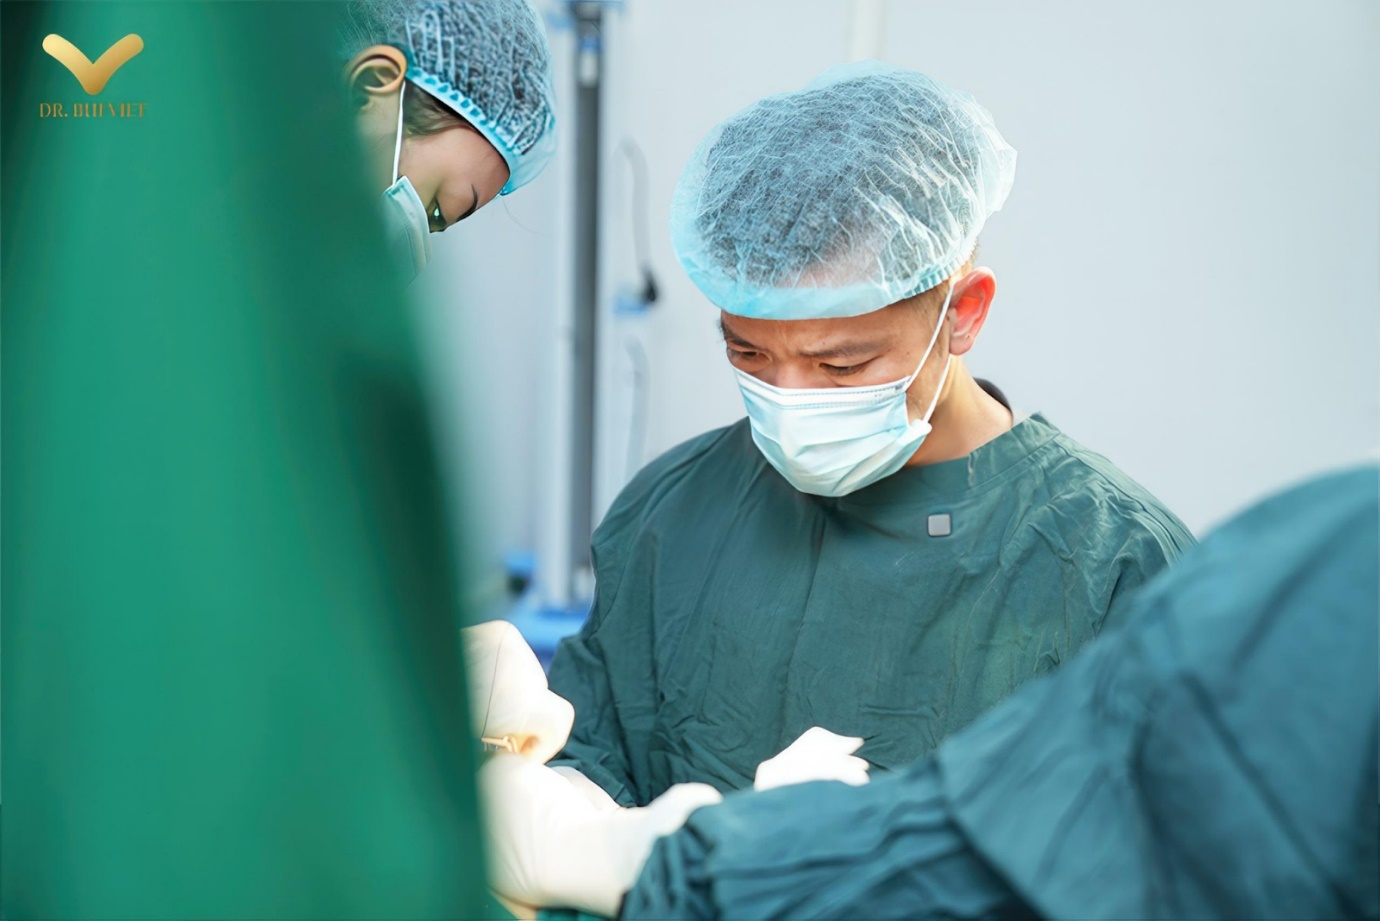 Bùi Minh Việt - Bác sĩ “mát tay” trong nghề thẩm mỹ chăm sóc sức khỏe “cô bé”